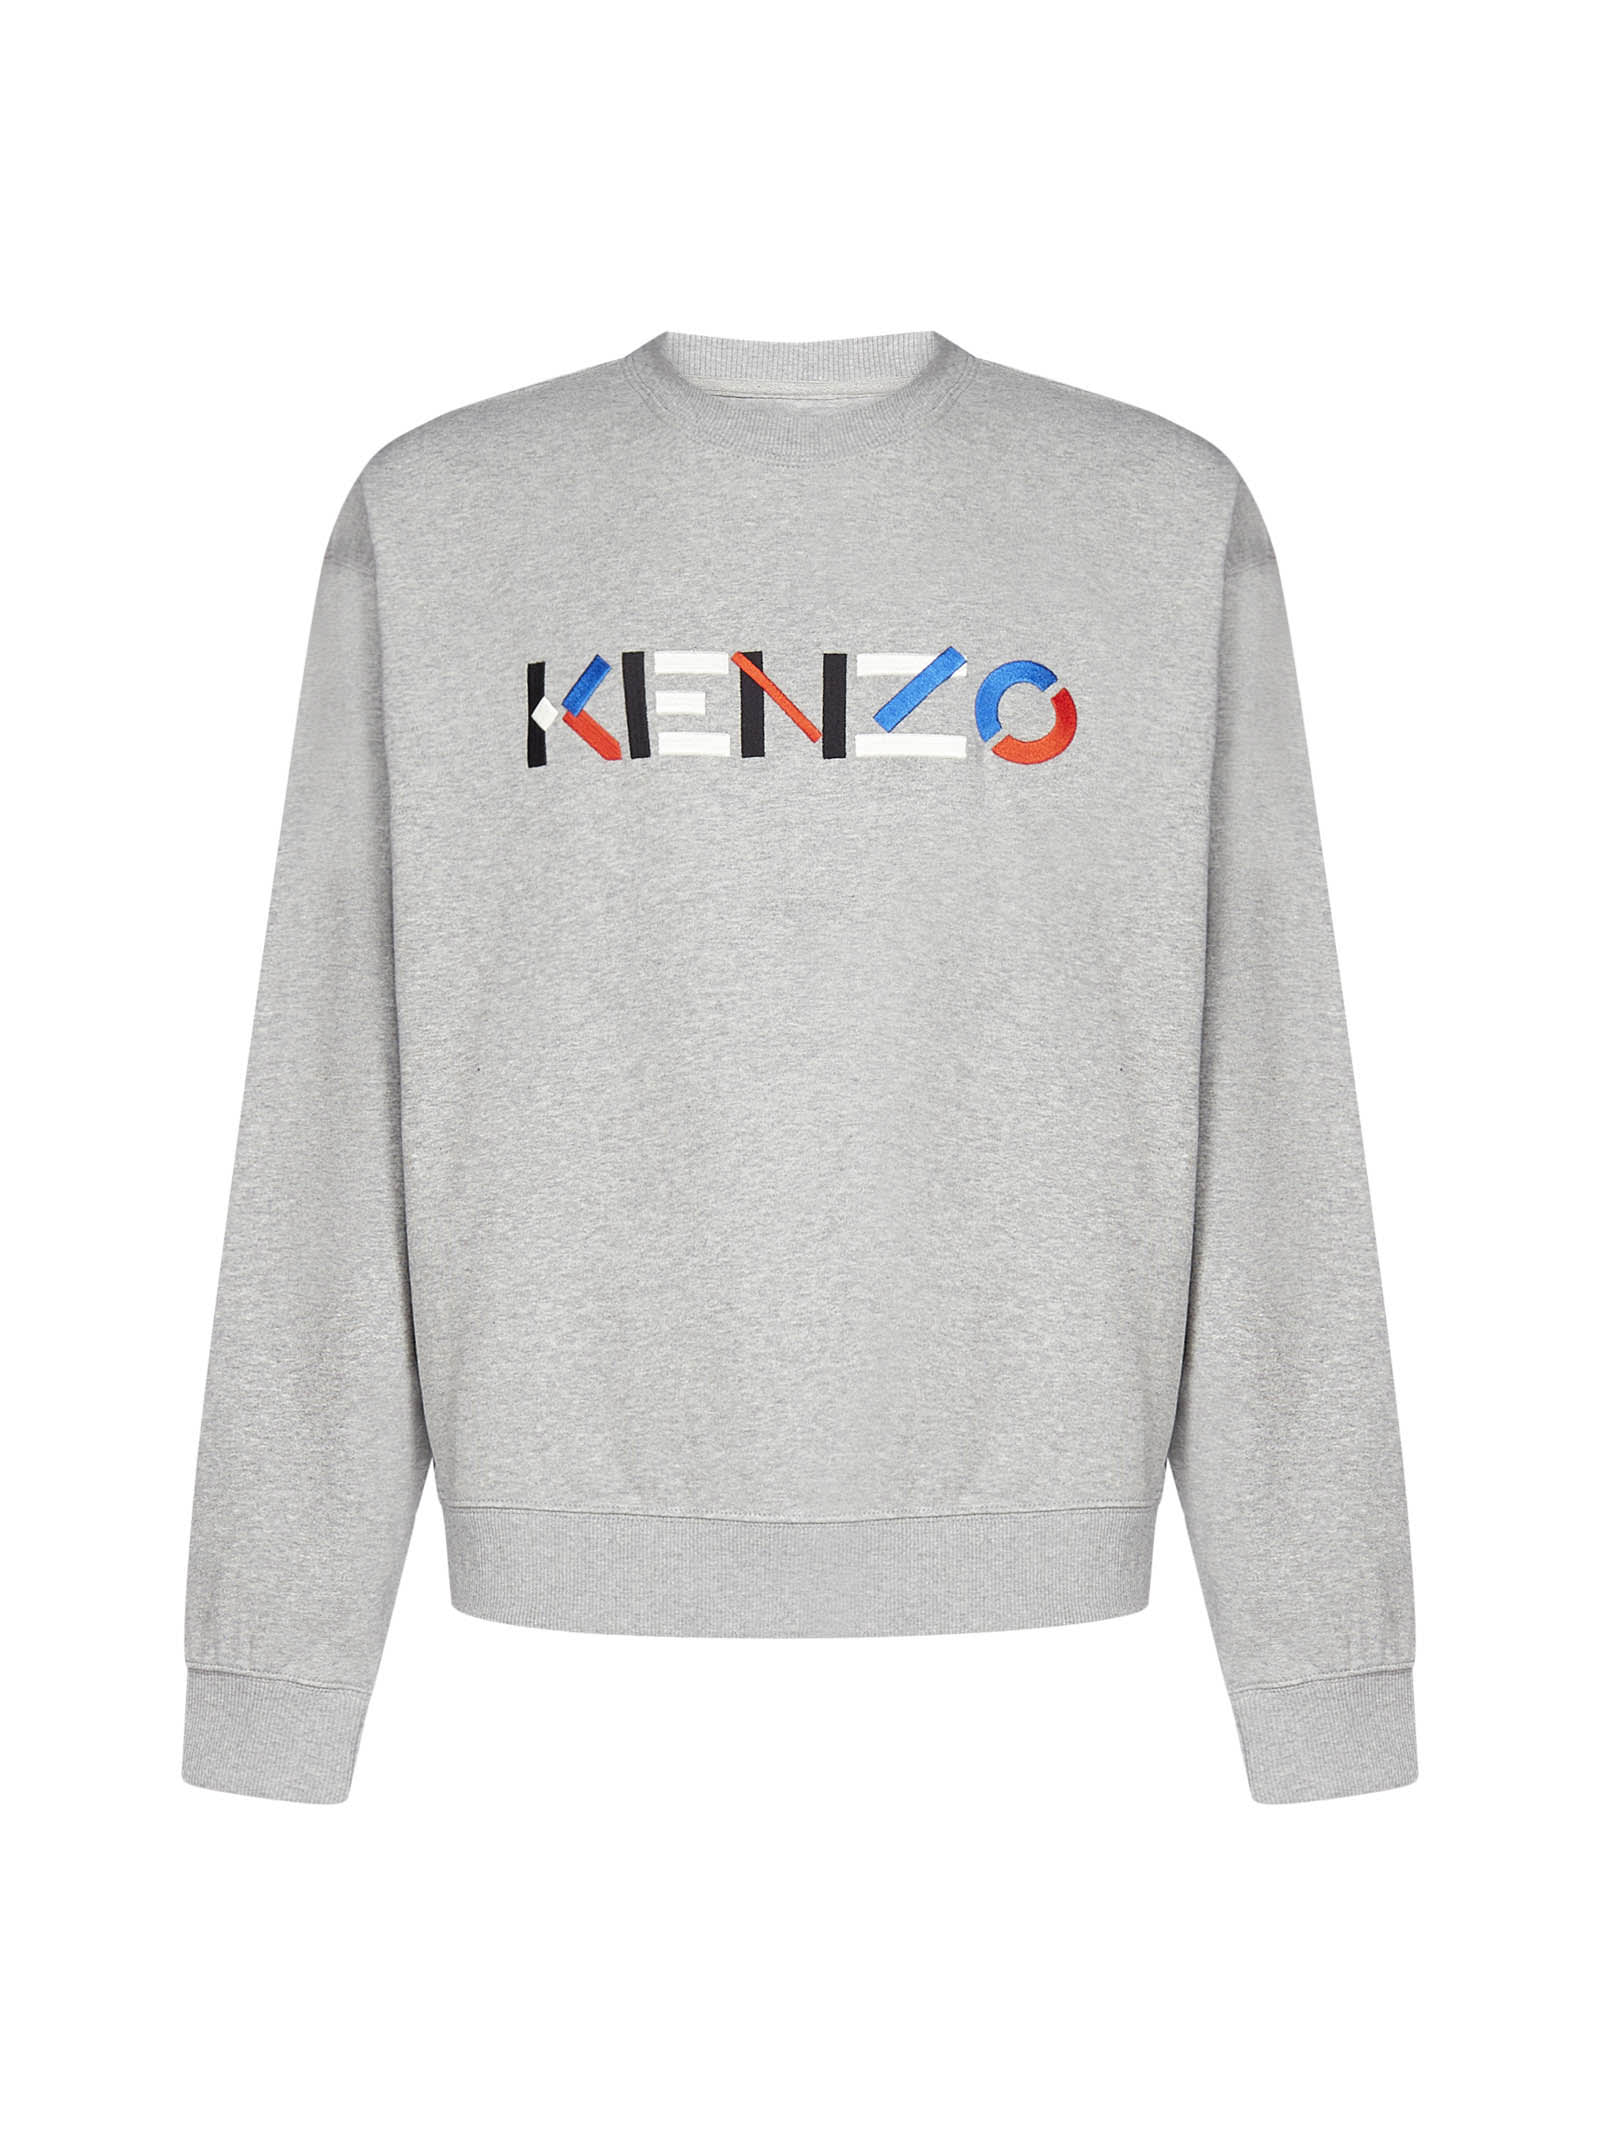 Kenzo Logo Cotton Oversized Sweatshirt